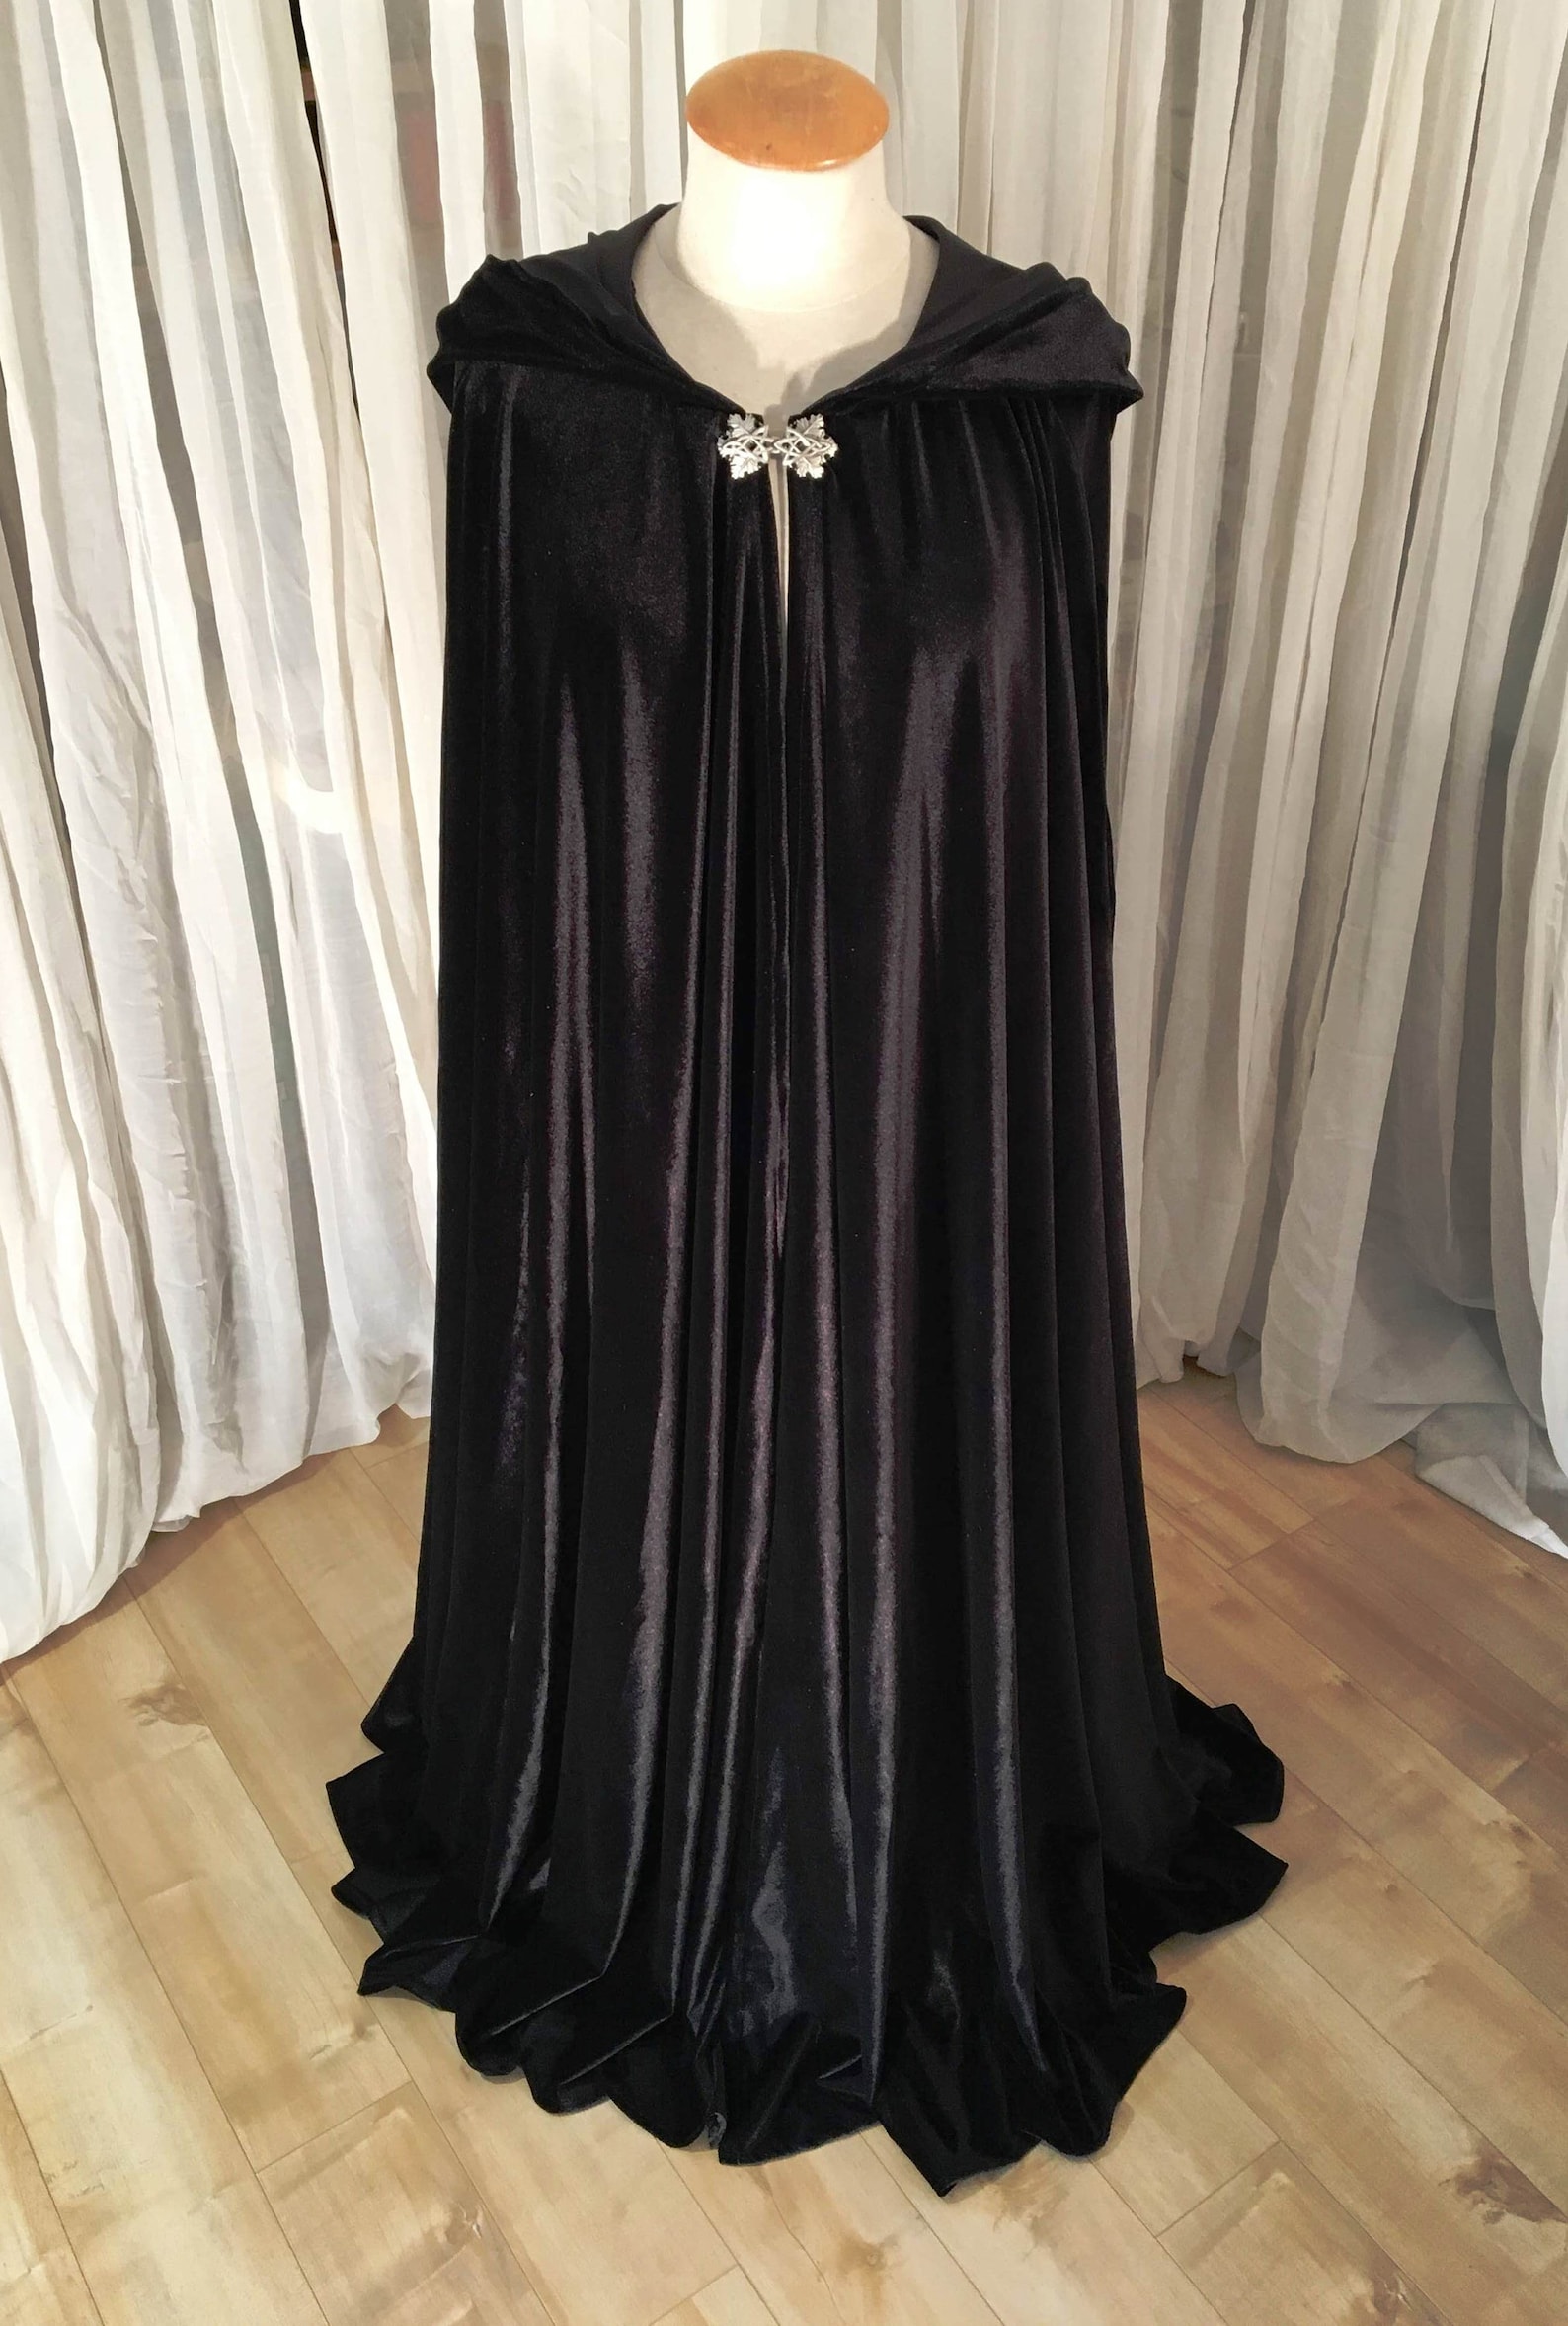 FULL CIRCLE Black Velvet Cloak Your Length - Etsy